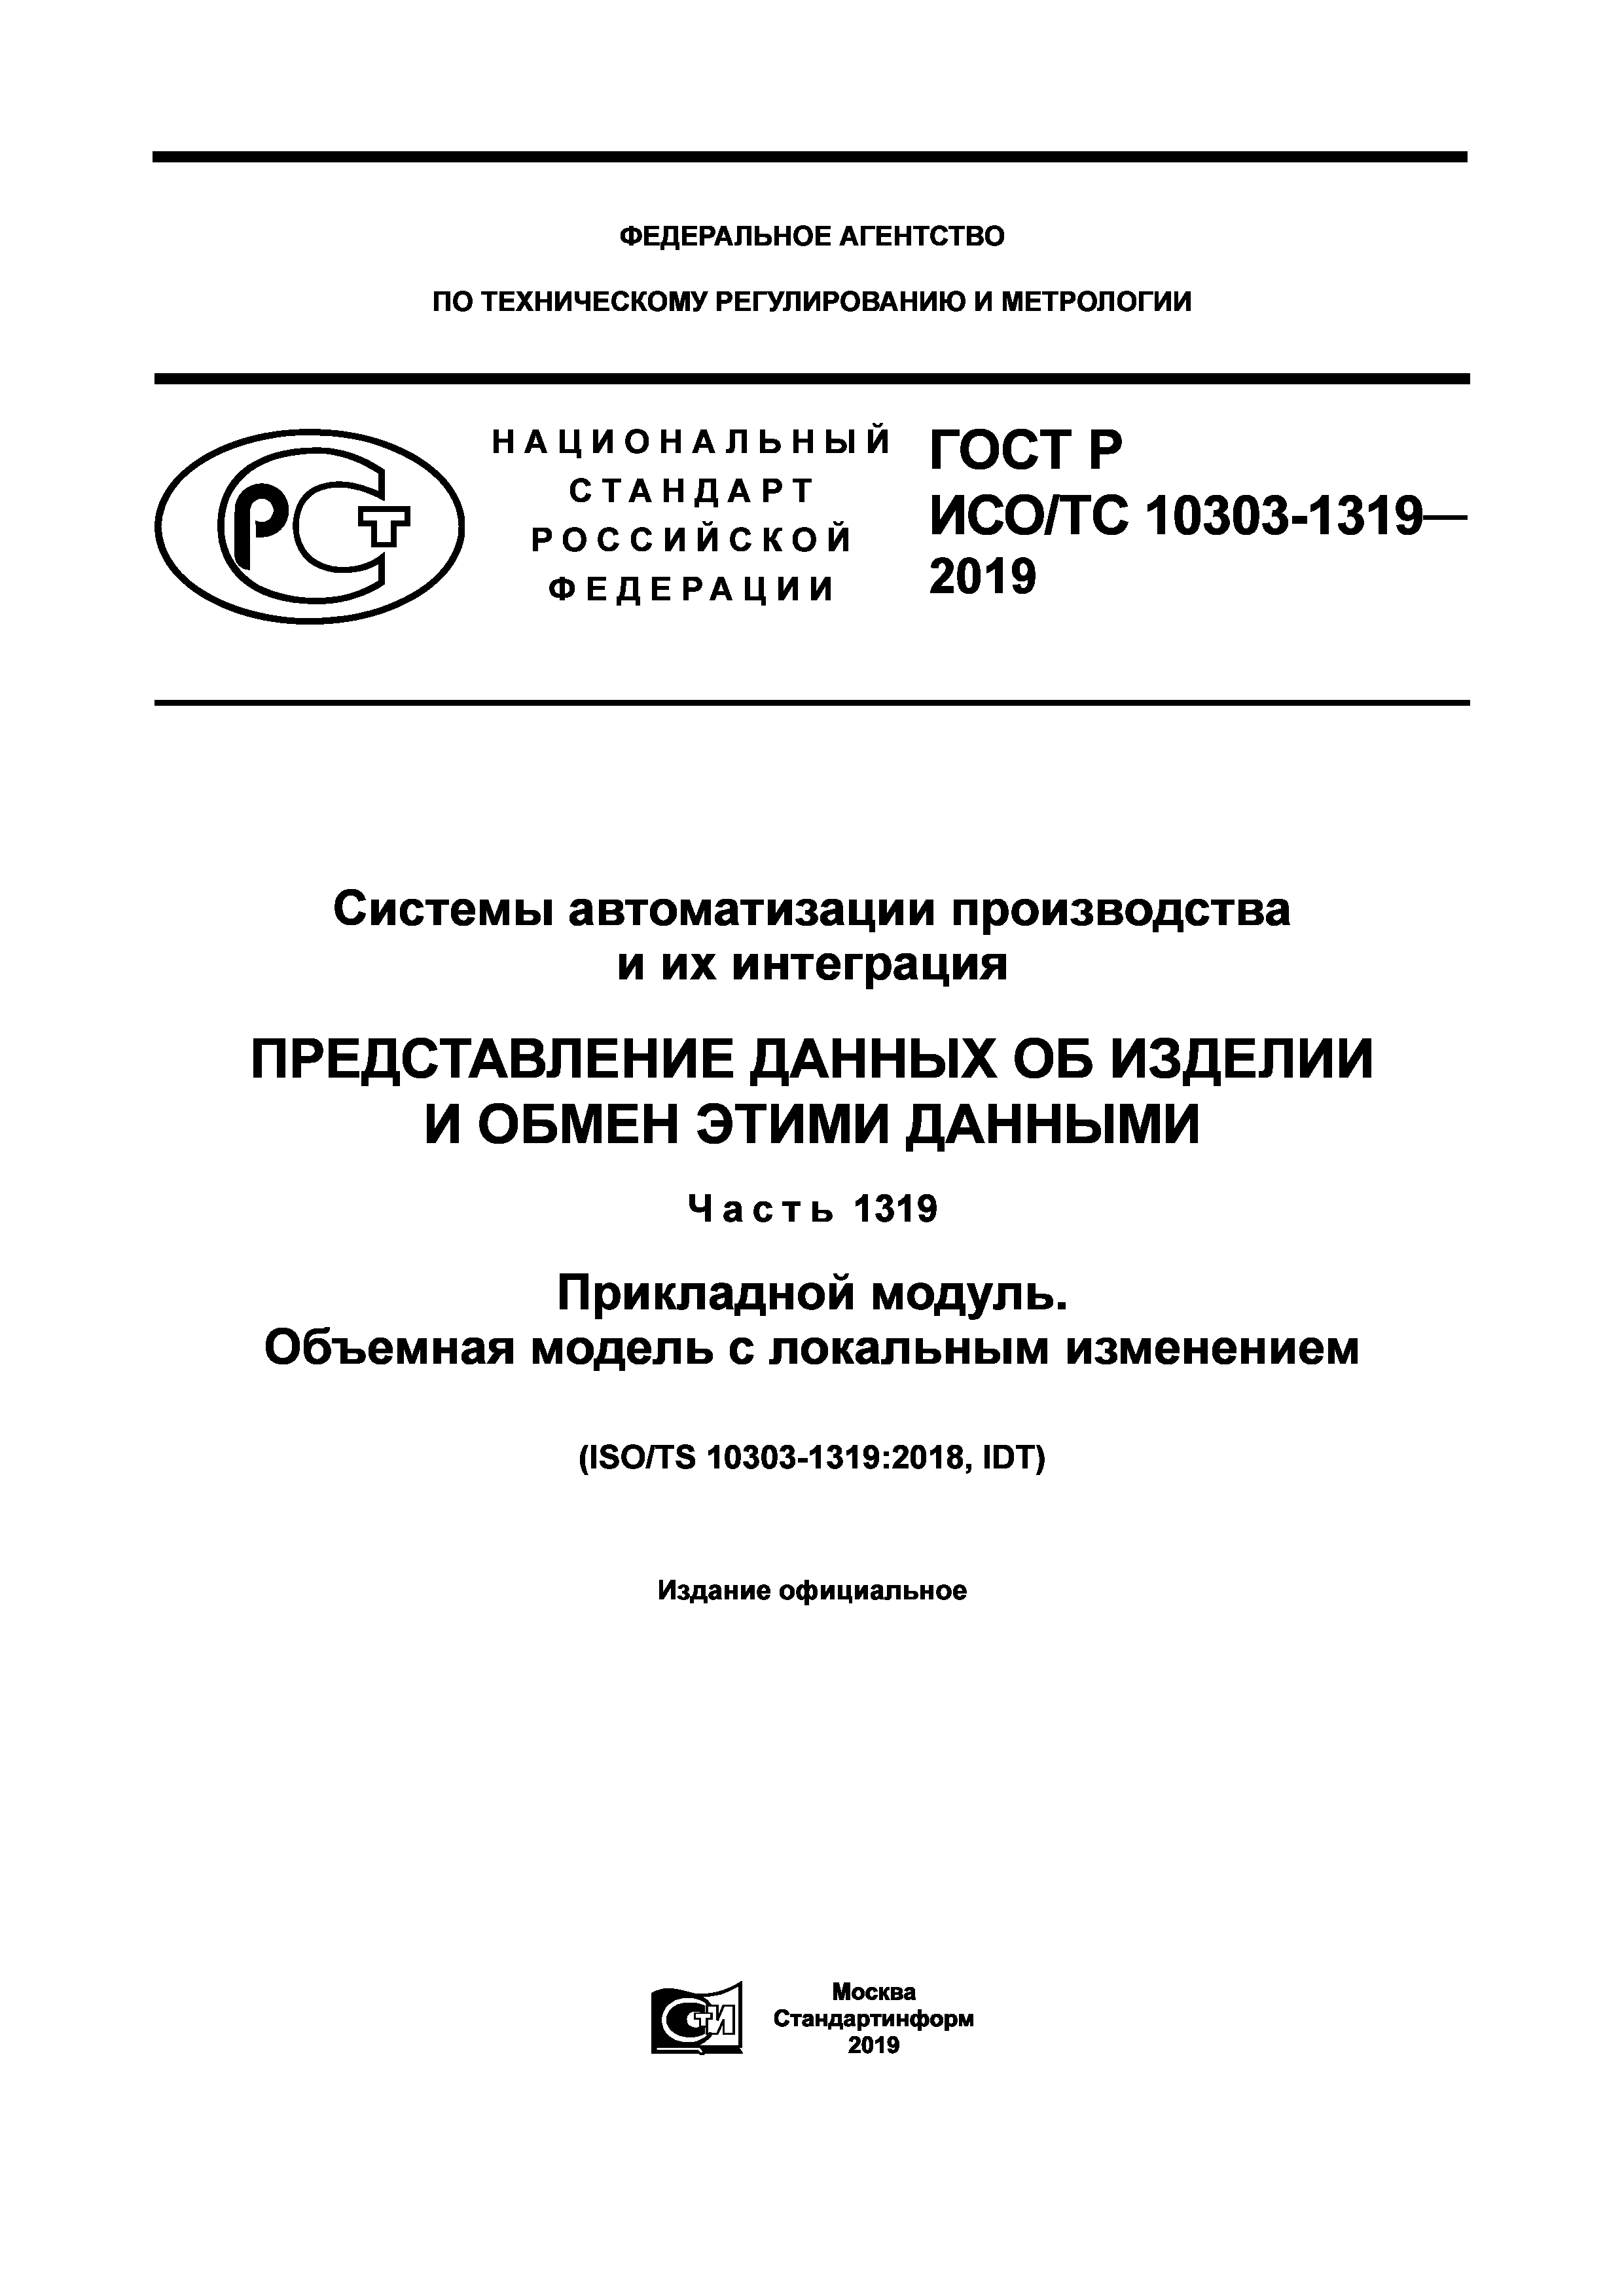 ГОСТ Р ИСО/ТС 10303-1319-2019